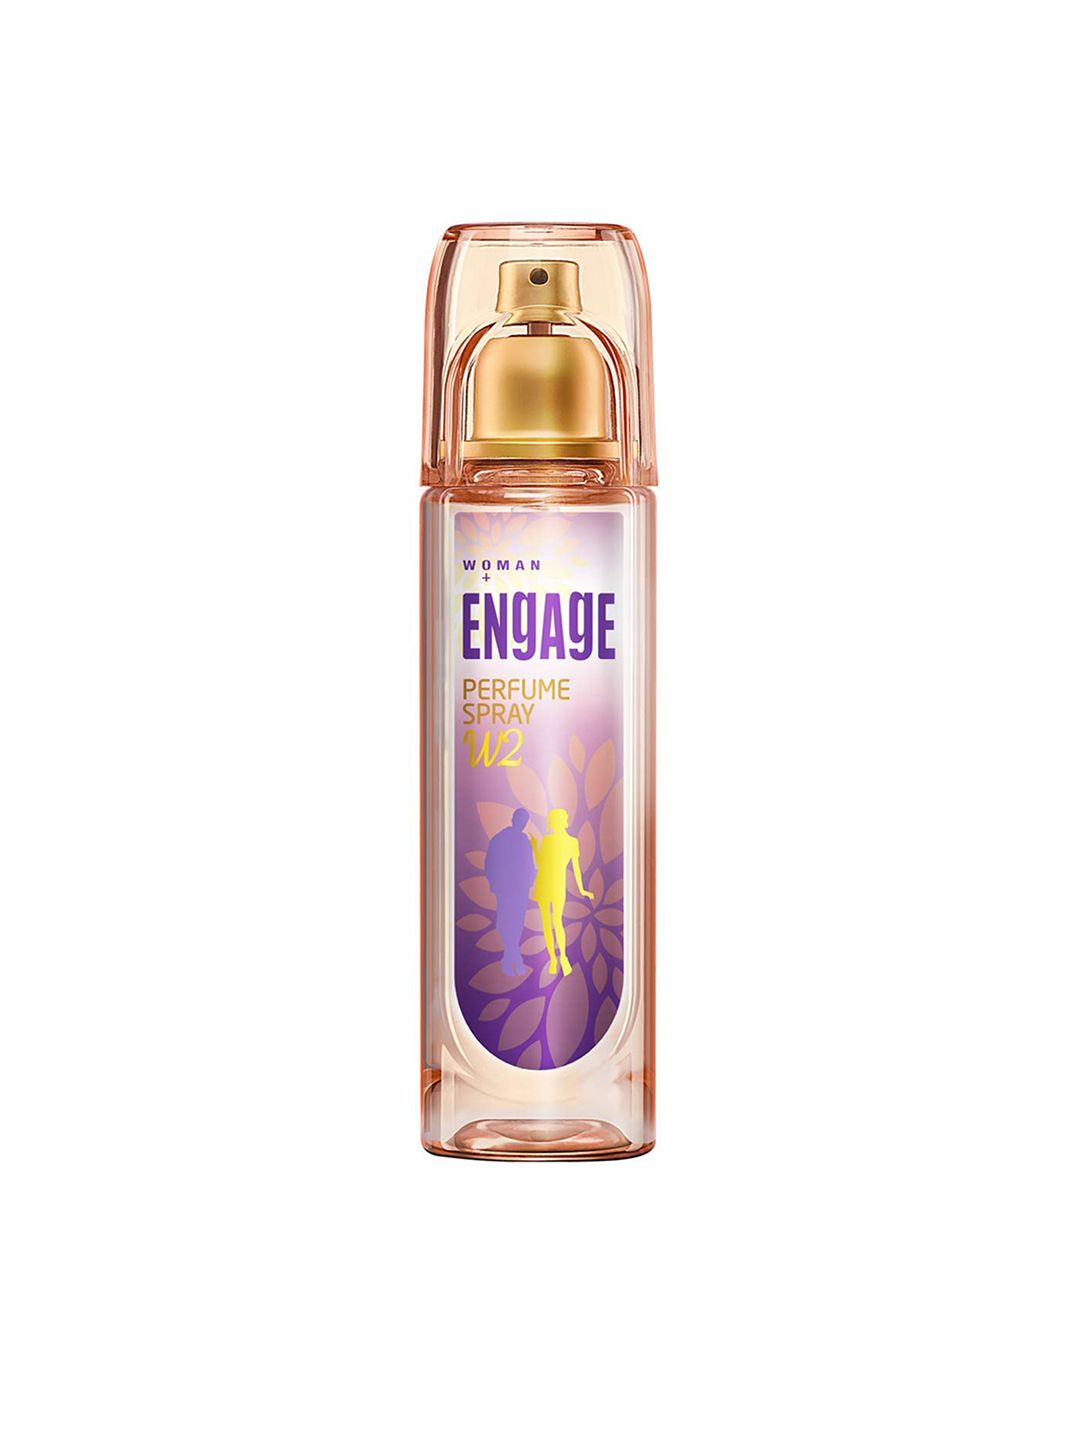 Engage Women W2 Perfume Spray 120 ml Price in India